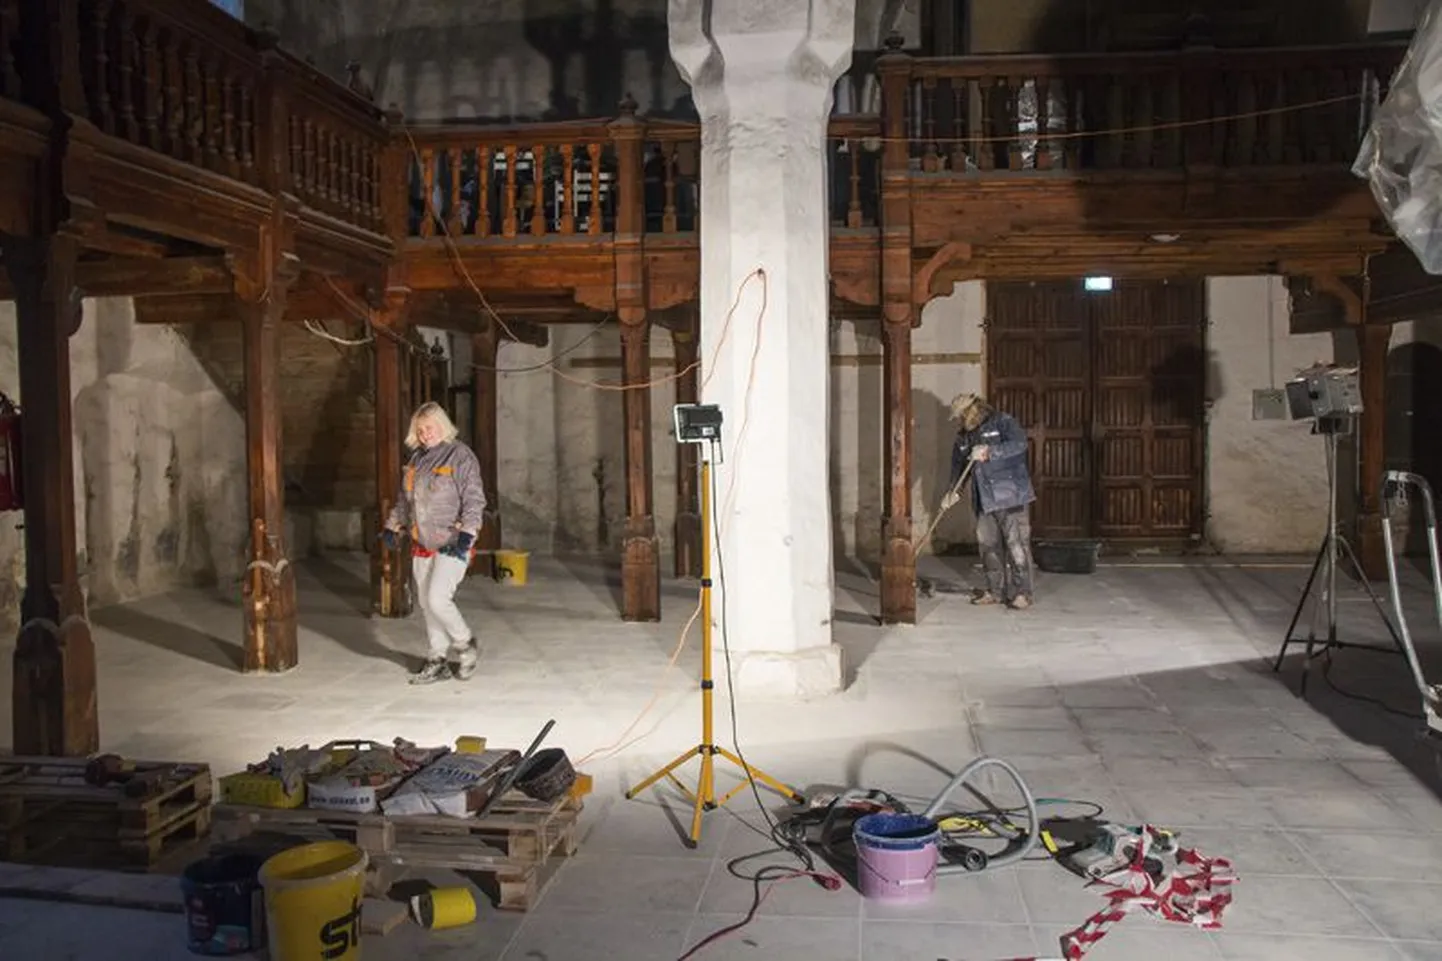 Haljala vald kuulutas aasta teoks kirikupõranda taastamise.